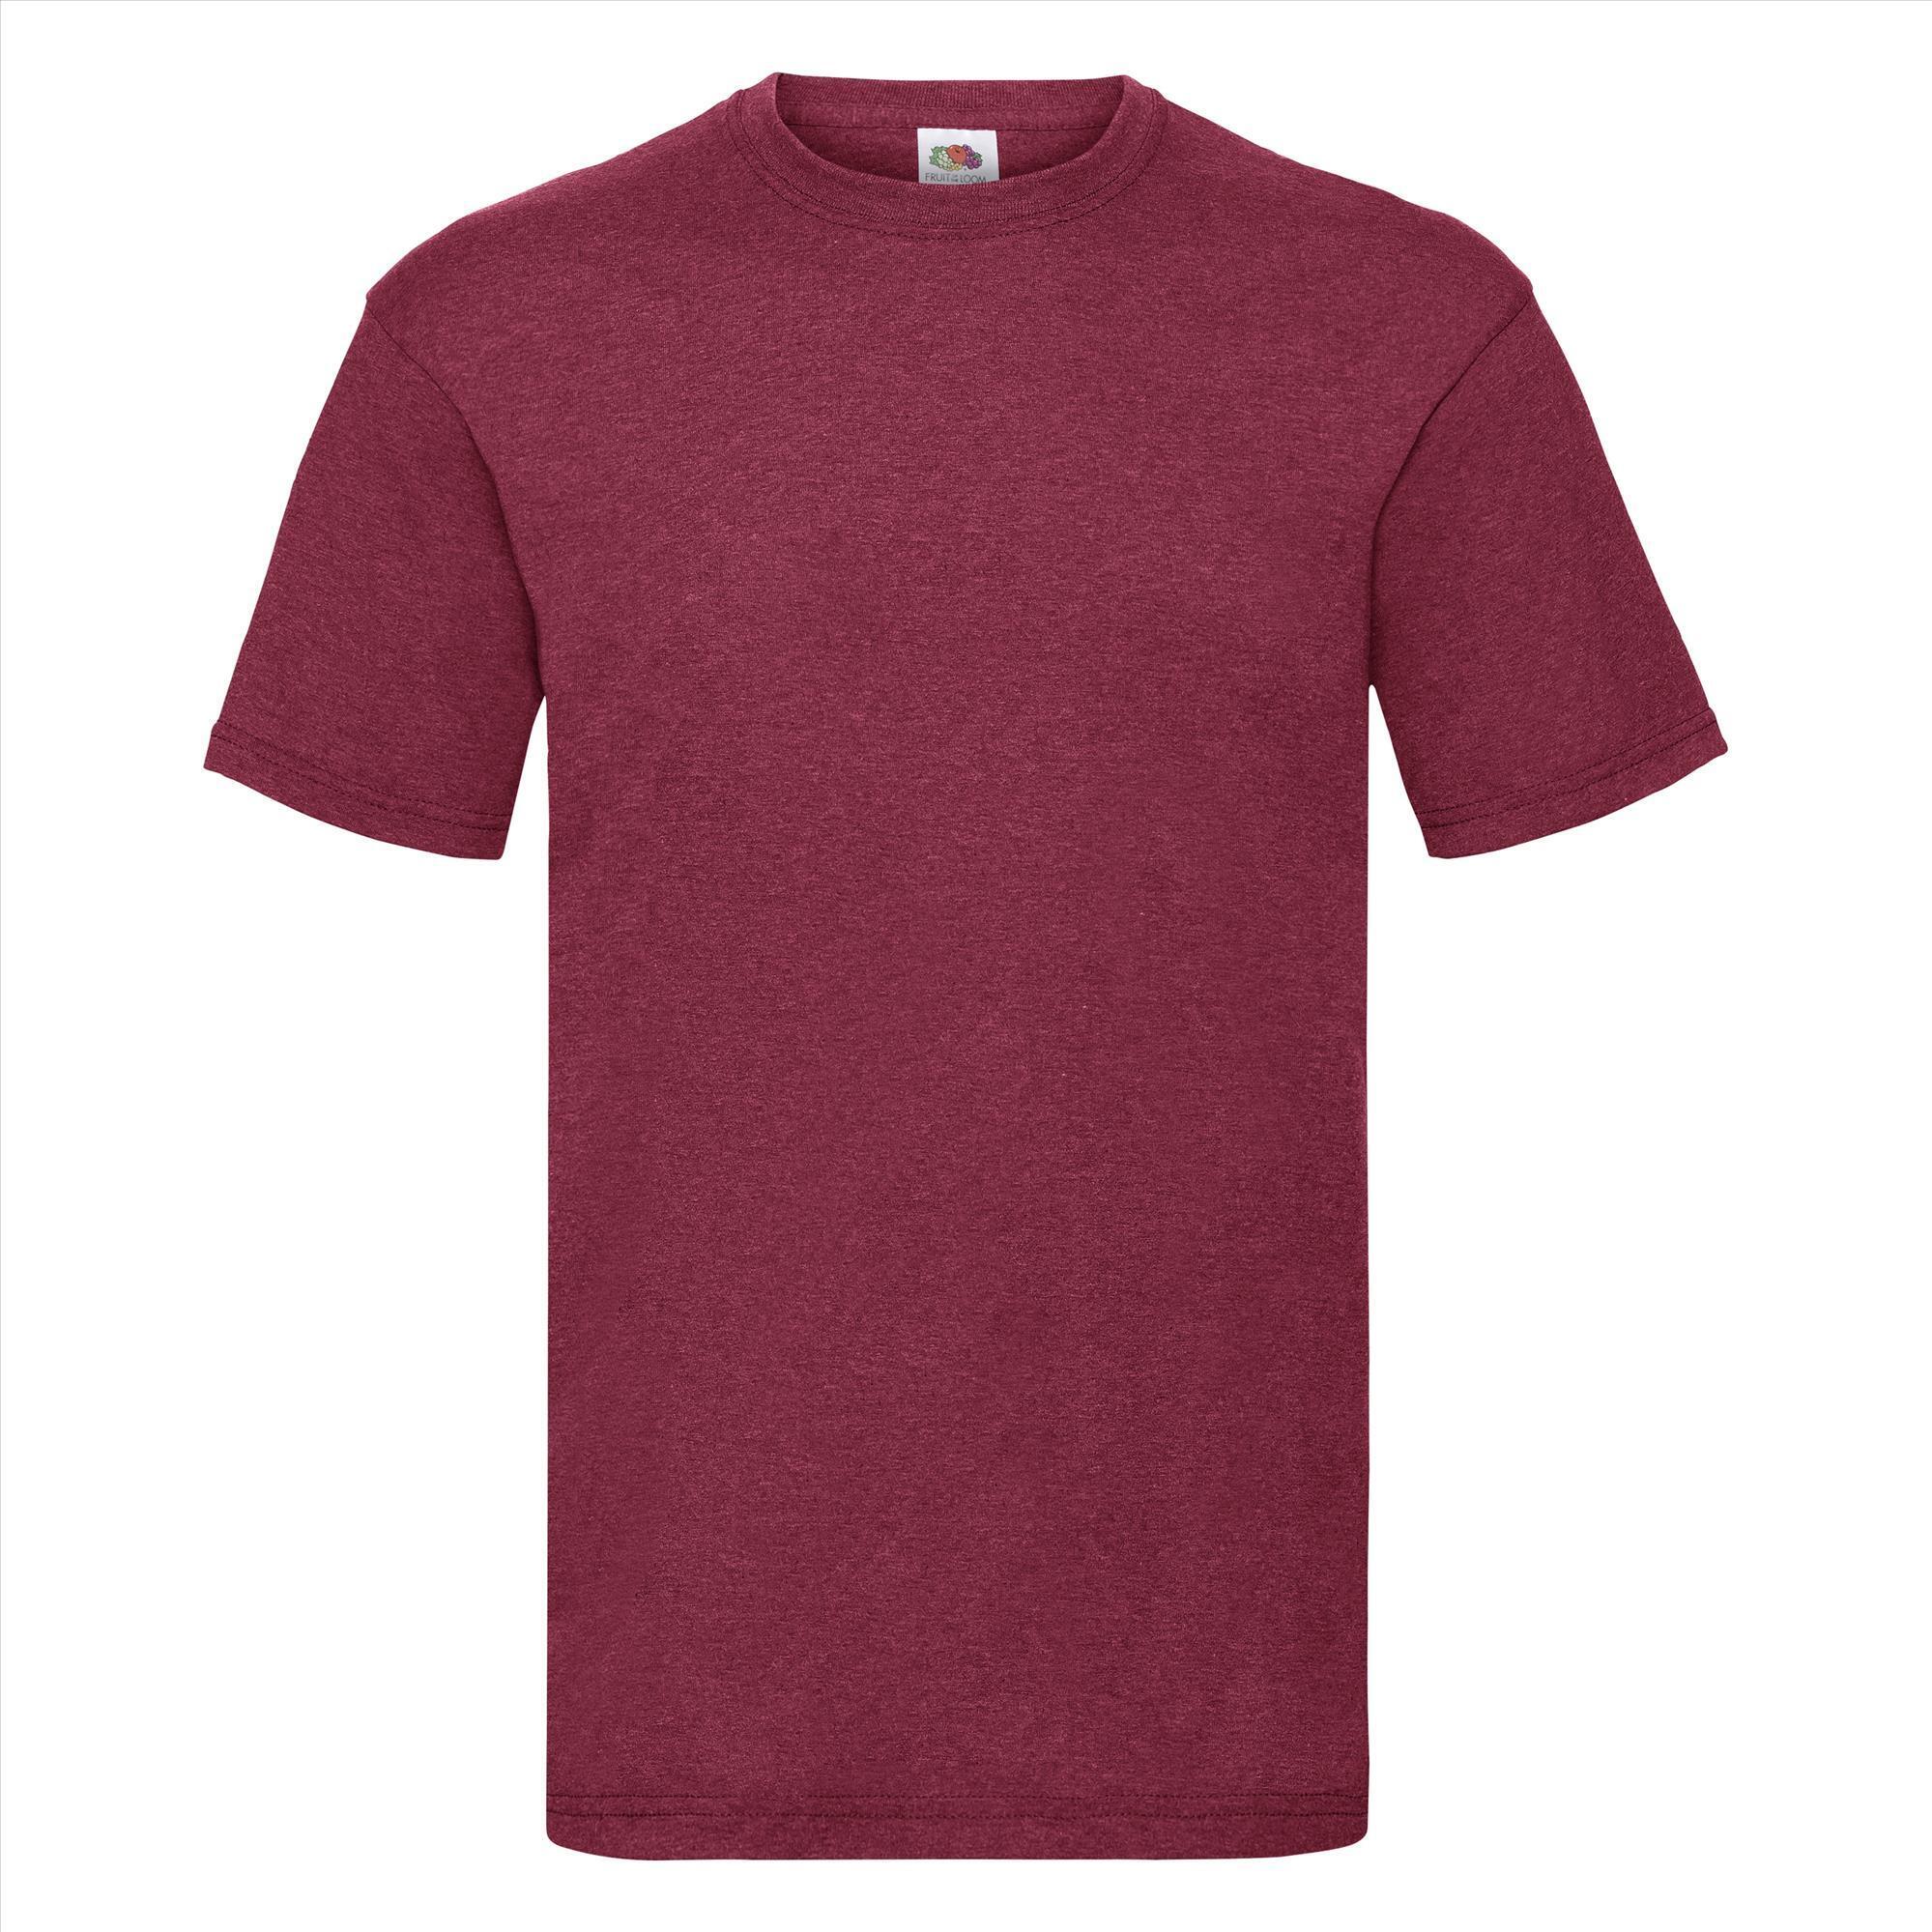 T-shirt voor mannen vintage heather rood personaliseren T-shirt bedrukken ronde hals